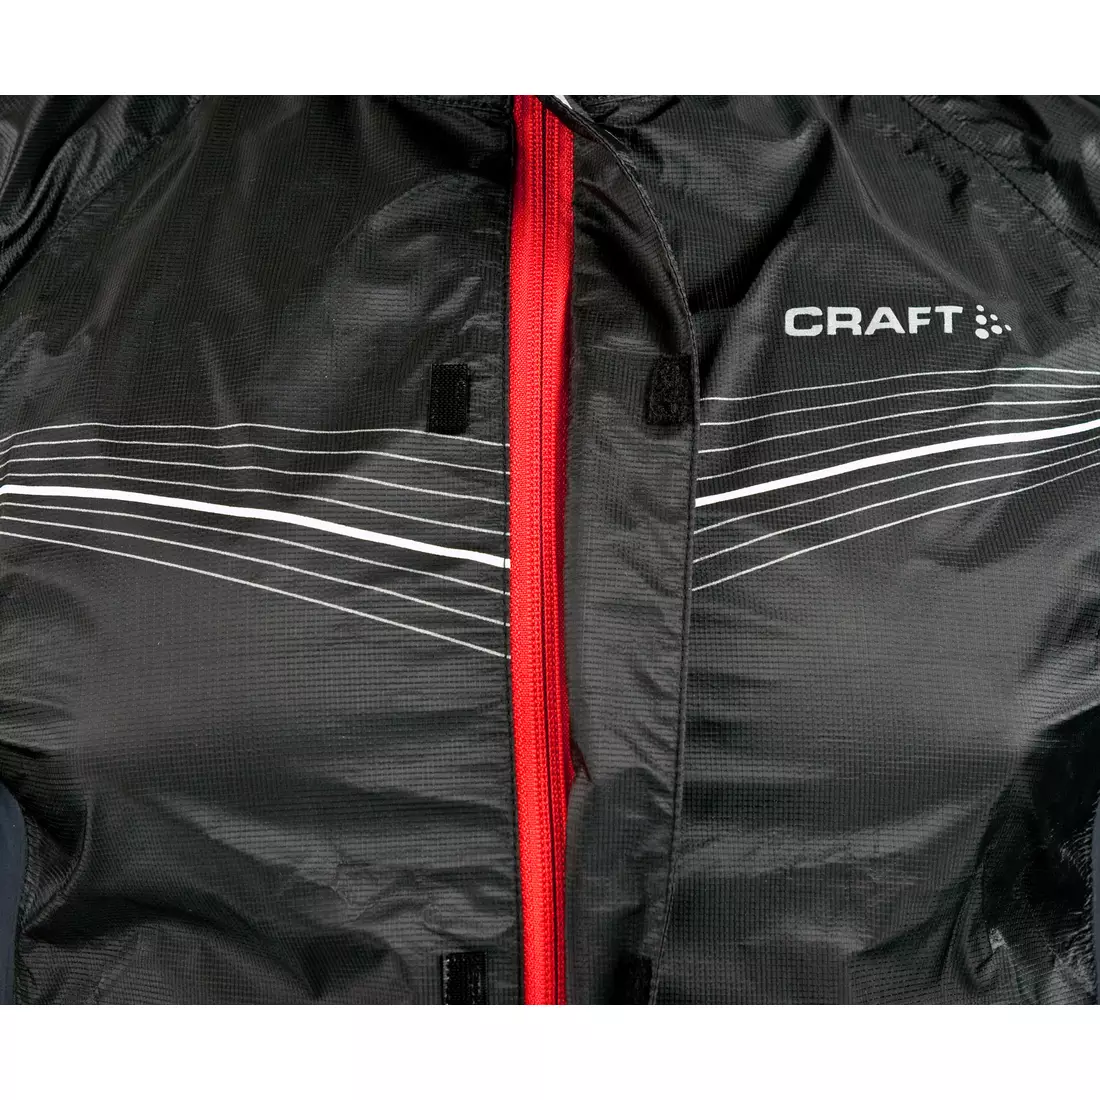 CRAFT ELITE BIKE - geaca de ciclism pentru barbati rezistenta la ploaie 1902576-9900, culoare: negru